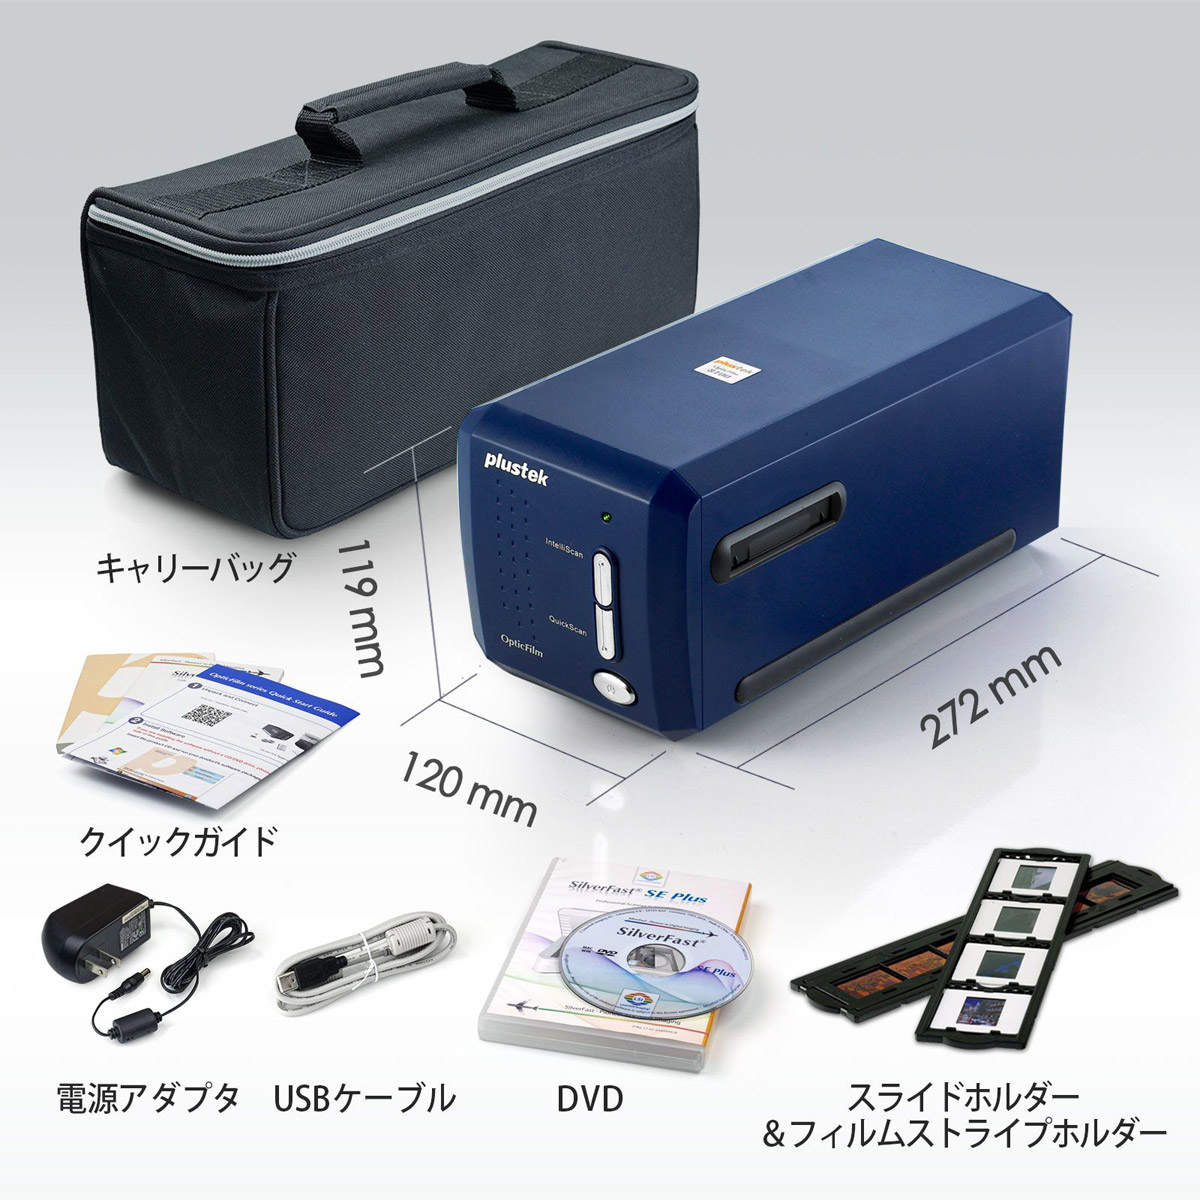 Plustek Scanner OpticFilm 8100| Plustek Japan